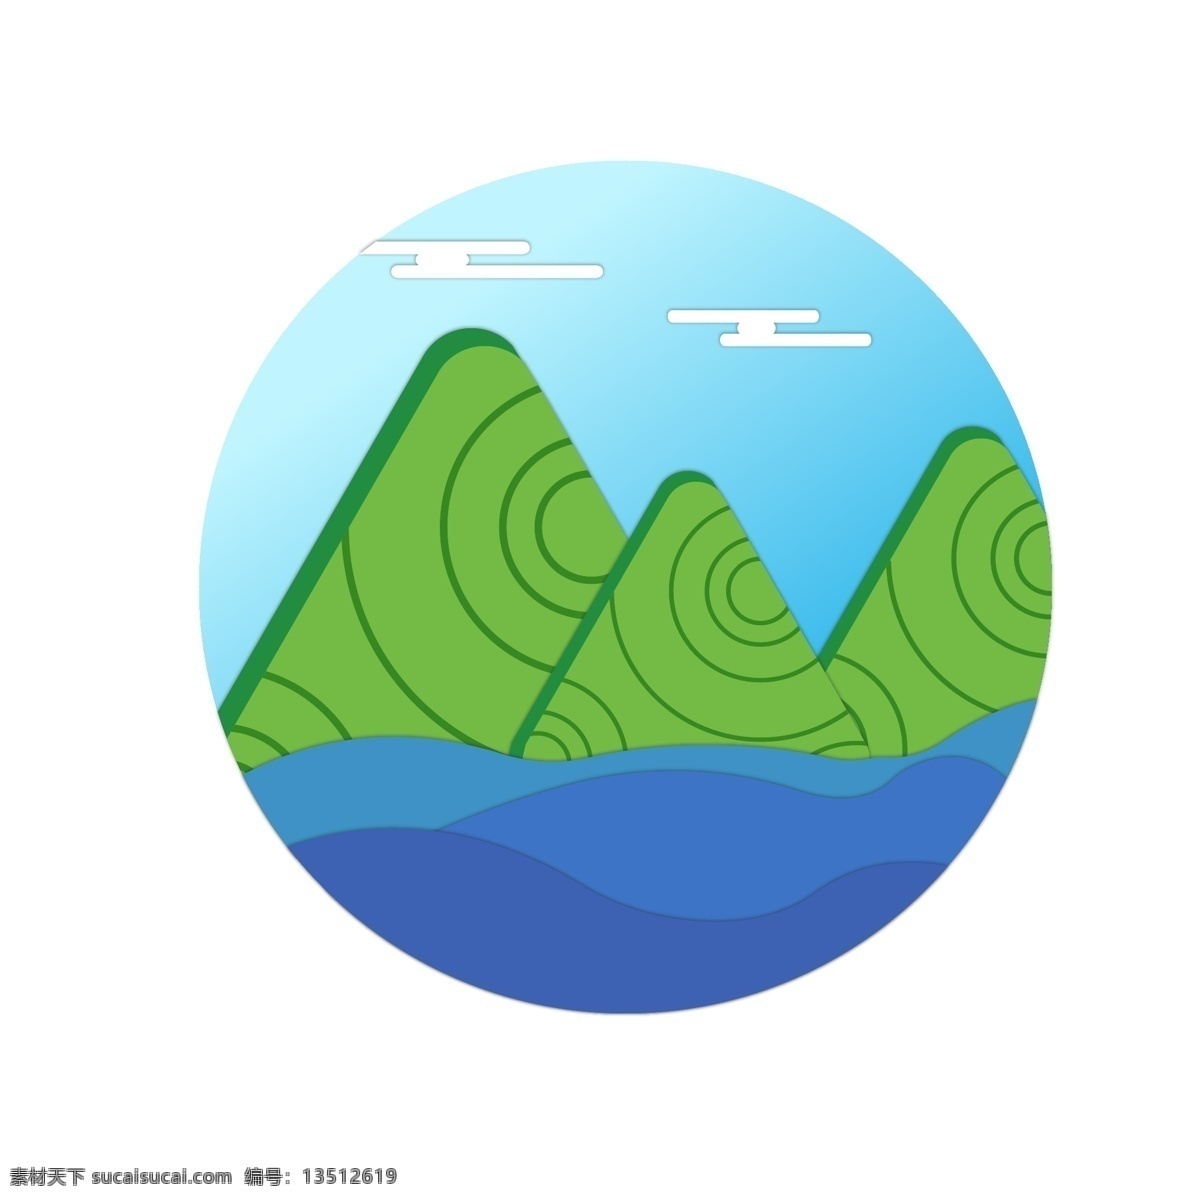 端午节 风景 插画 装饰 端午节山峰 蓝色的海洋 绿色的山峰 立体山峰 漂亮的山峰 创意山峰